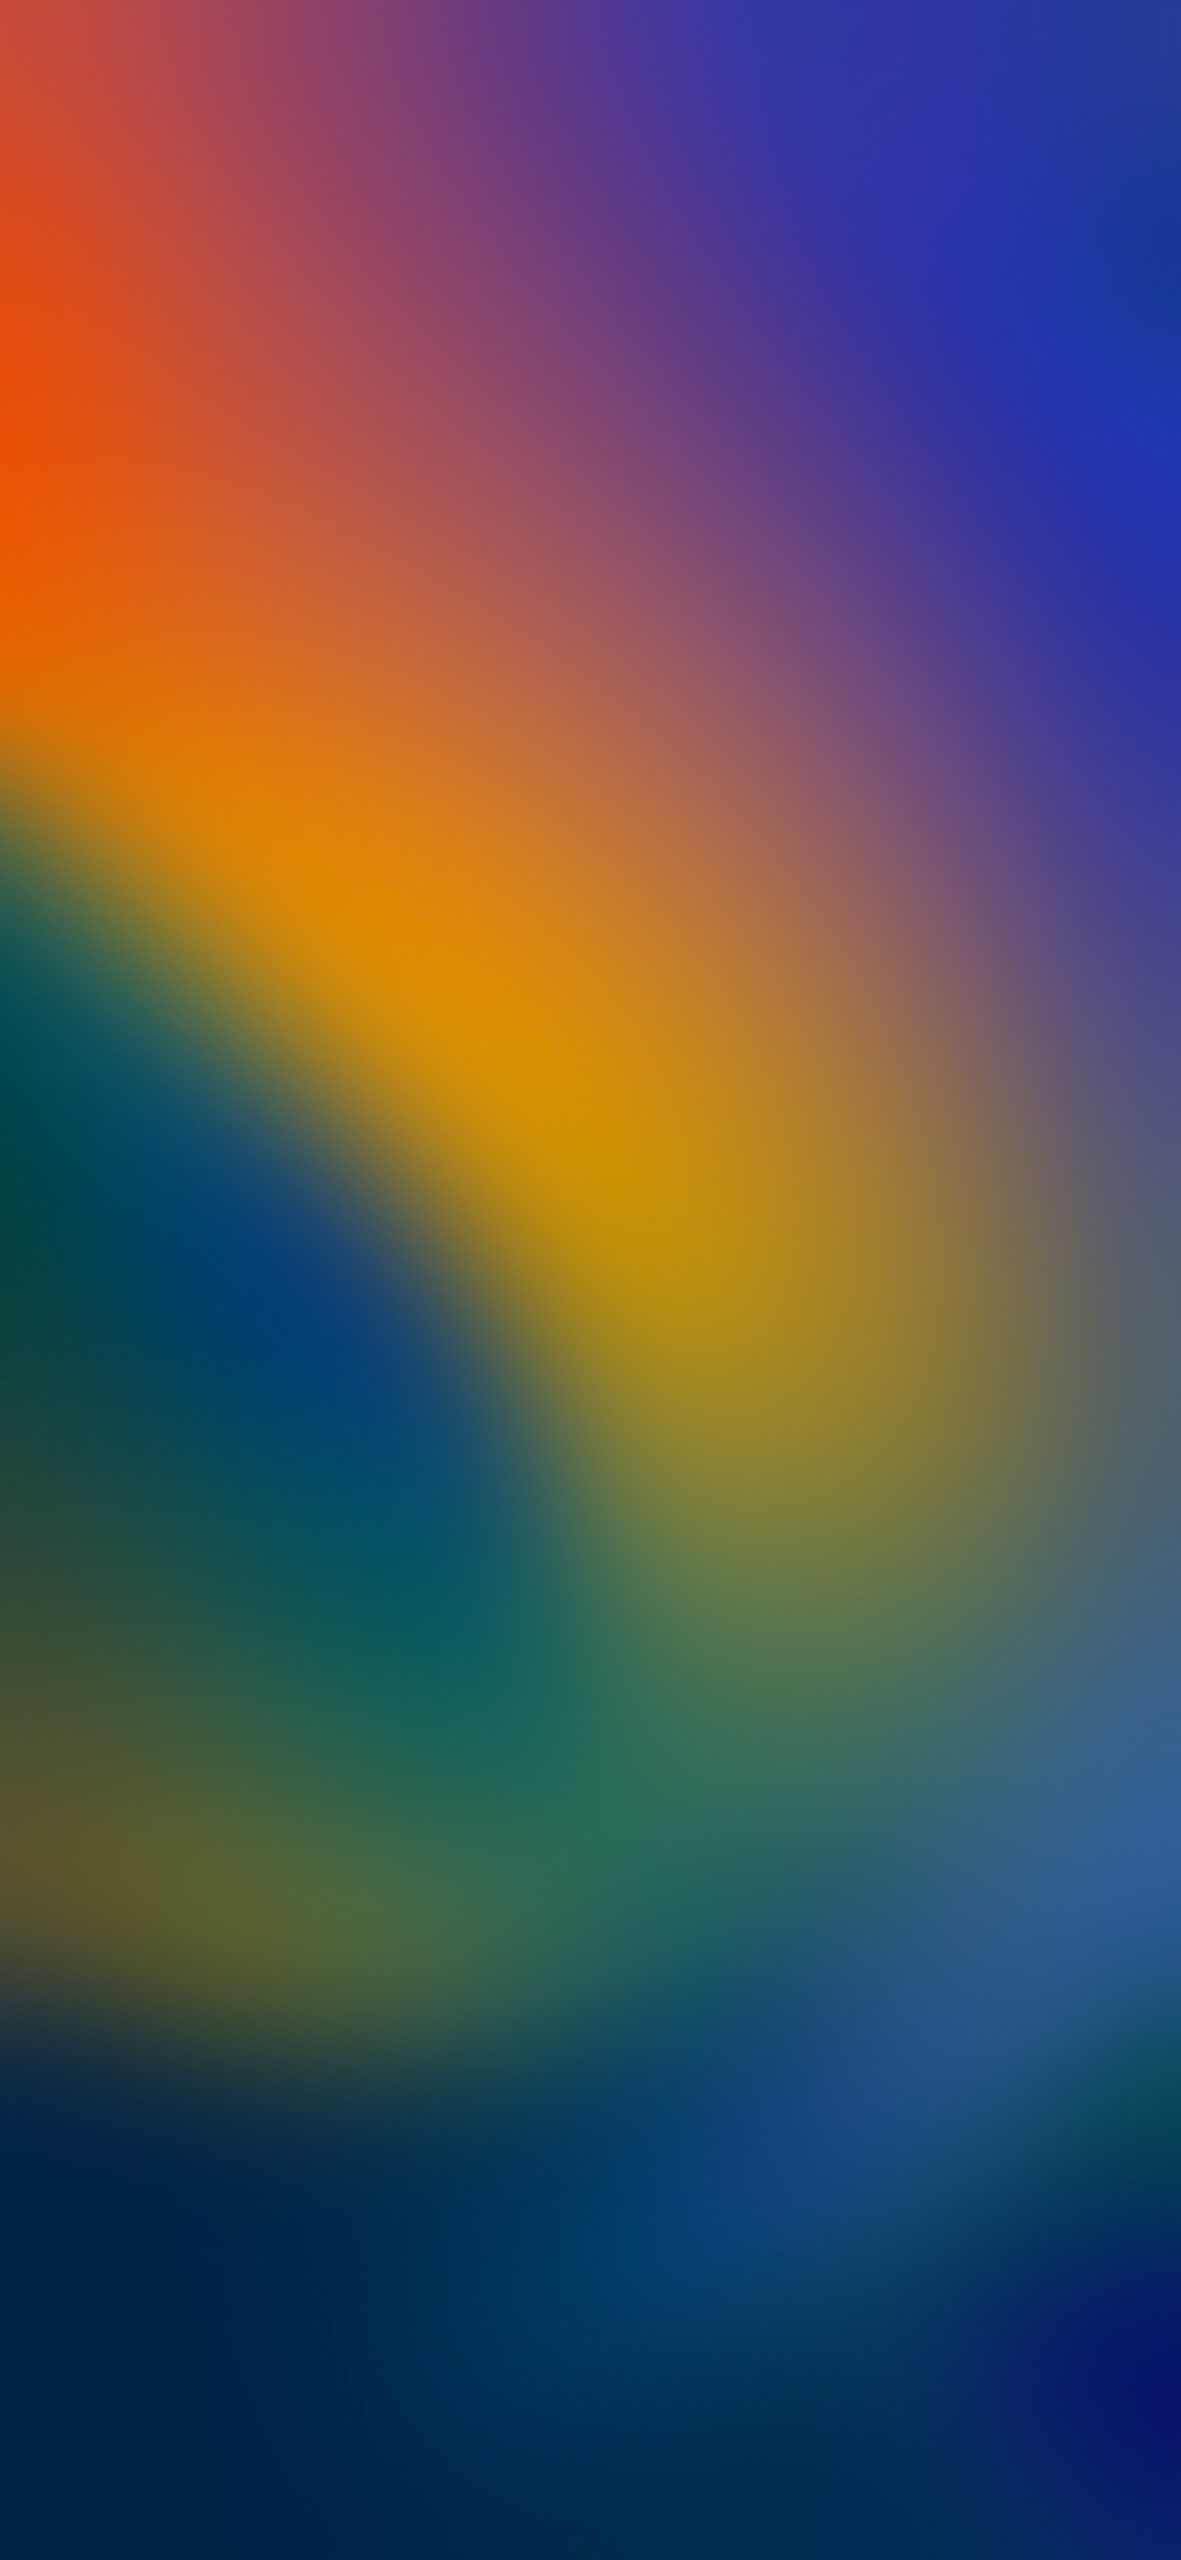 iOS1612-Blurred Colors Wallpaper mang đến cho màn hình điện thoại của bạn một hình ảnh đẹp mắt và ấn tượng. Tông màu lạ và hình nền tuyệt đẹp sẽ khiến bạn trở nên nổi bật và thu hút mọi ánh nhìn.